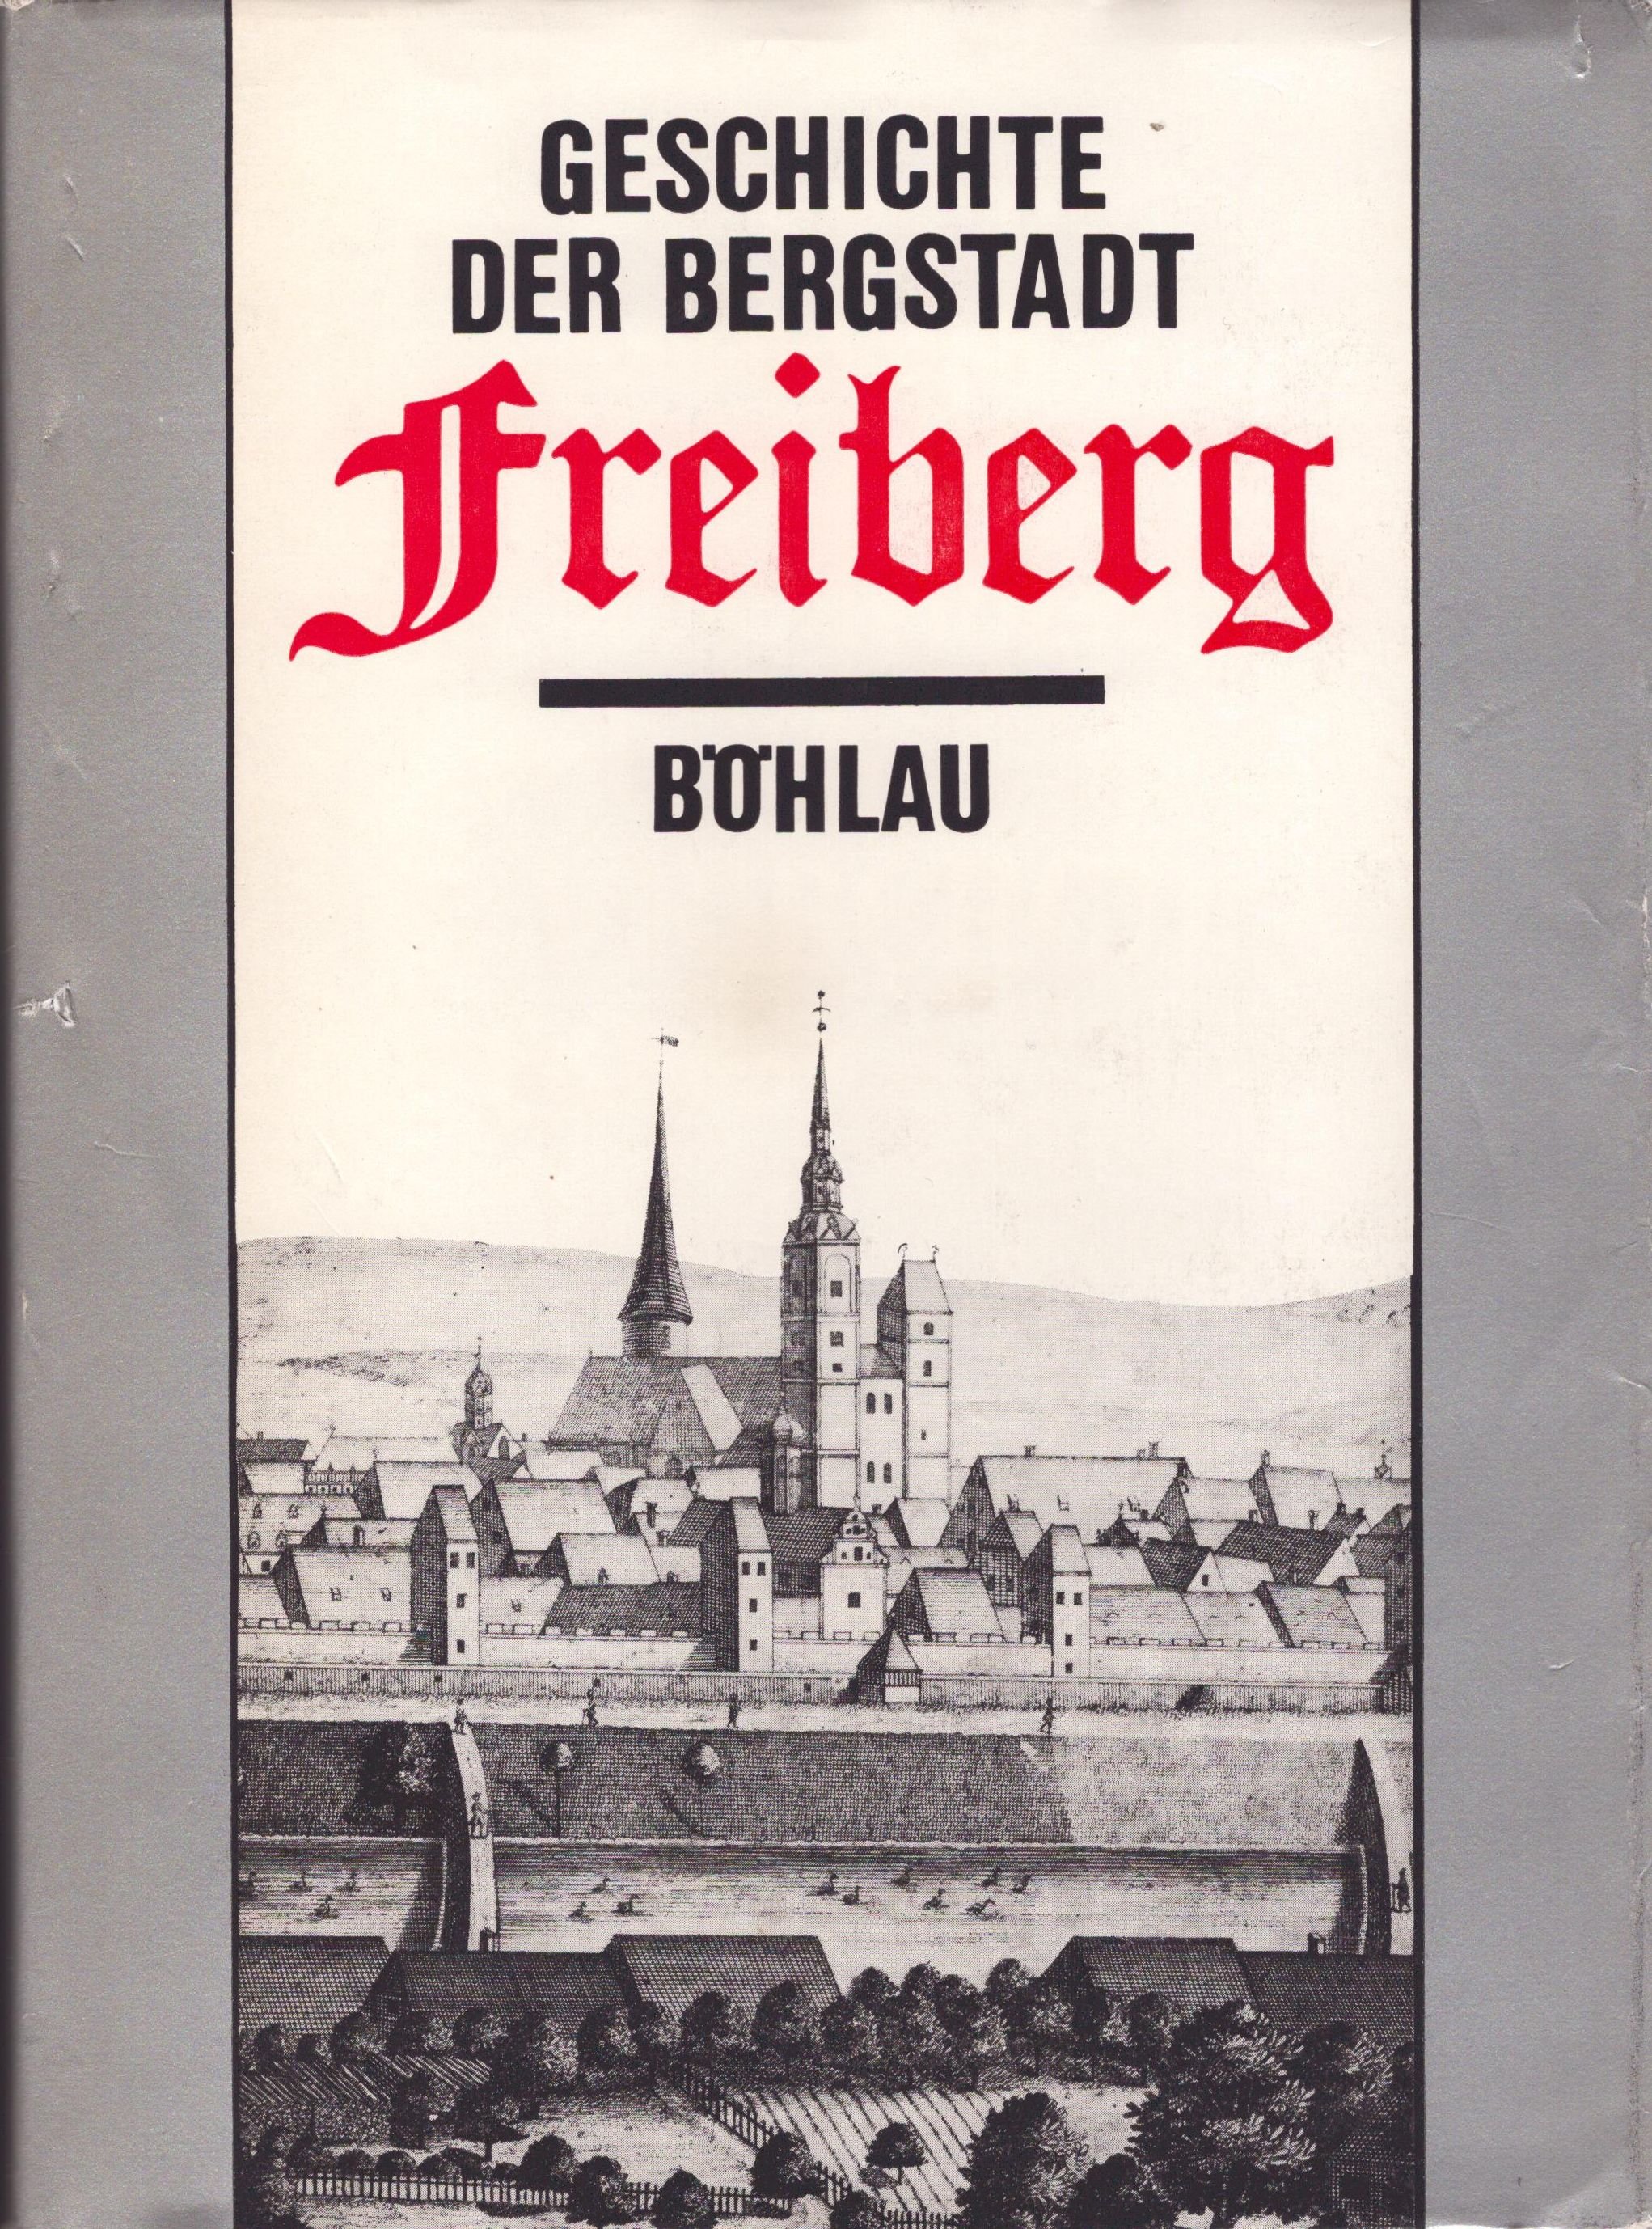 Geschichte der Bergstadt Freiberg. 800 Jahre, vom Silberbergbau zum Montanwissenschaftlichen Zentrum (Archiv SAXONIA-FREIBERG-STIFTUNG CC BY-NC-SA)